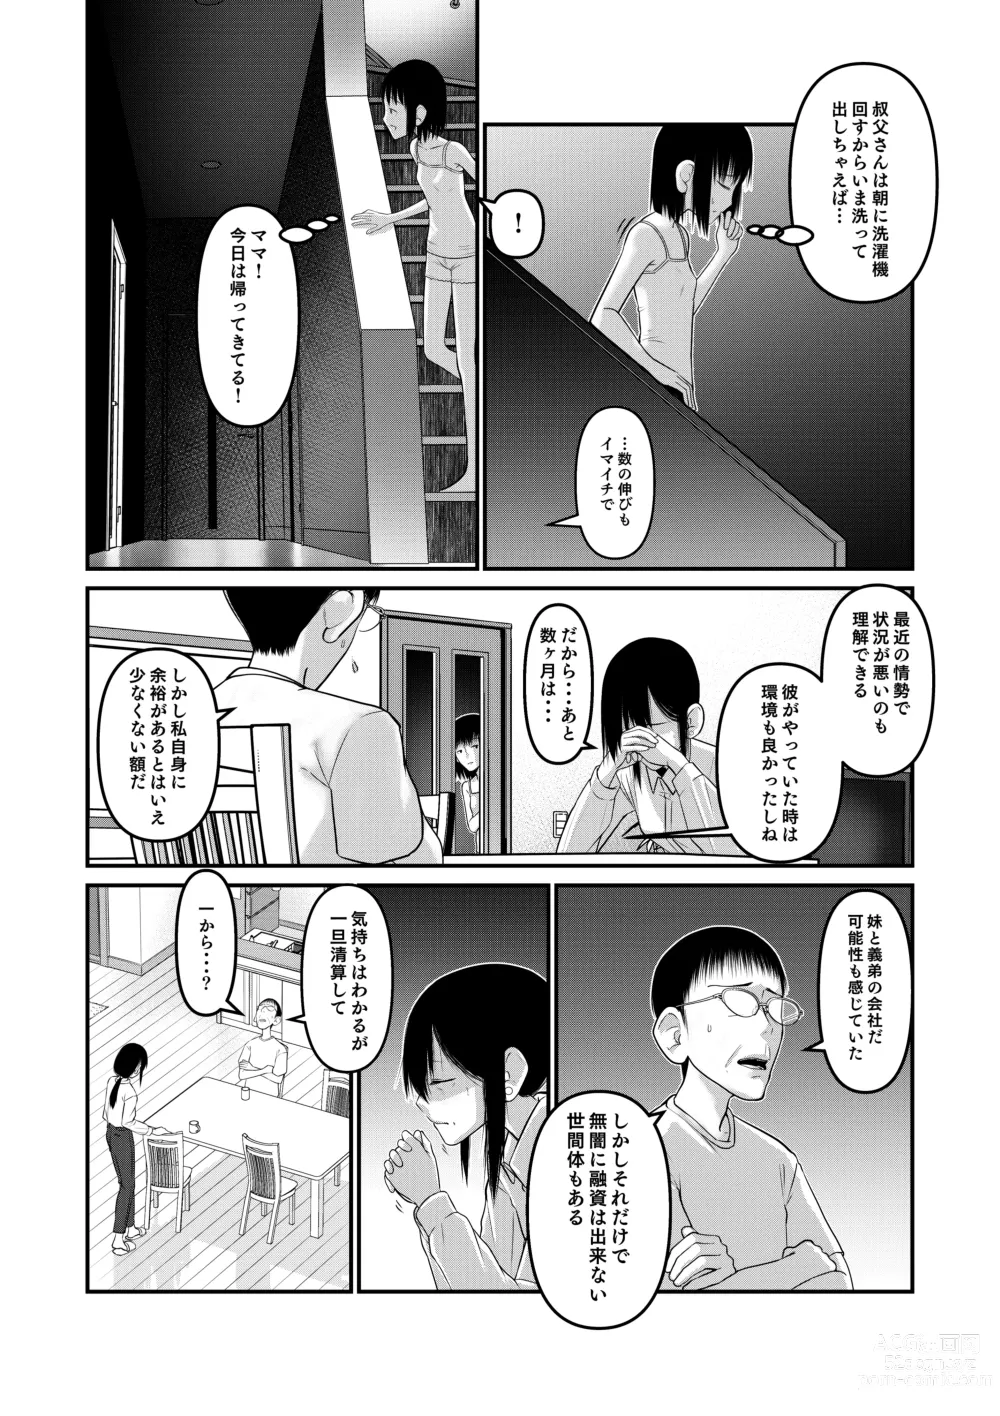 Page 10 of doujinshi Makoto-chan Himitsu no Otetsudai.